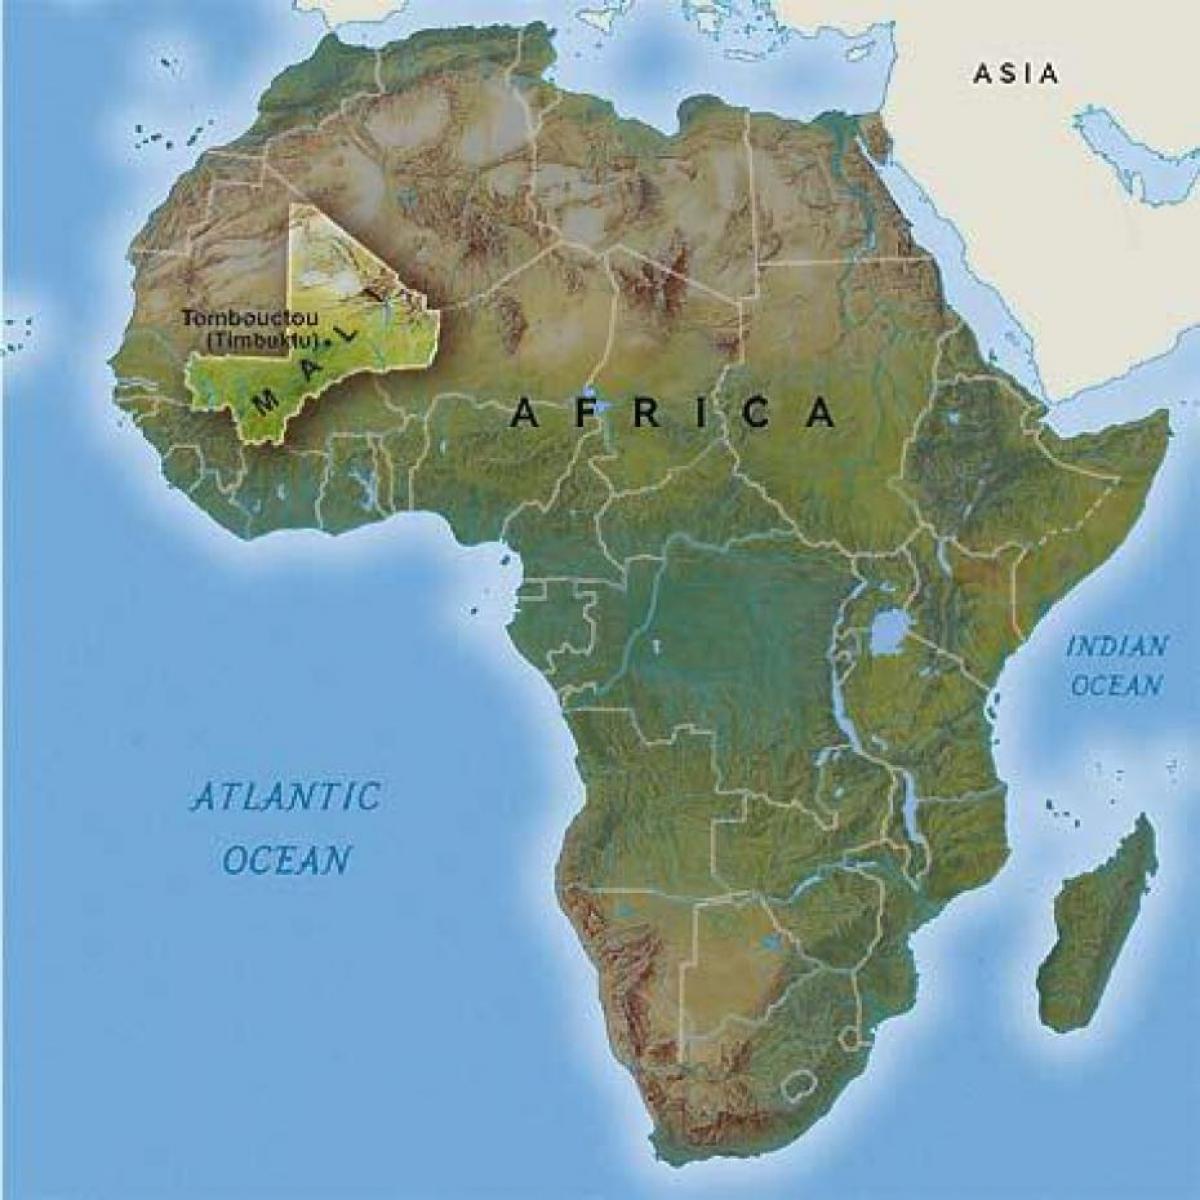 통북투 Mali 지도